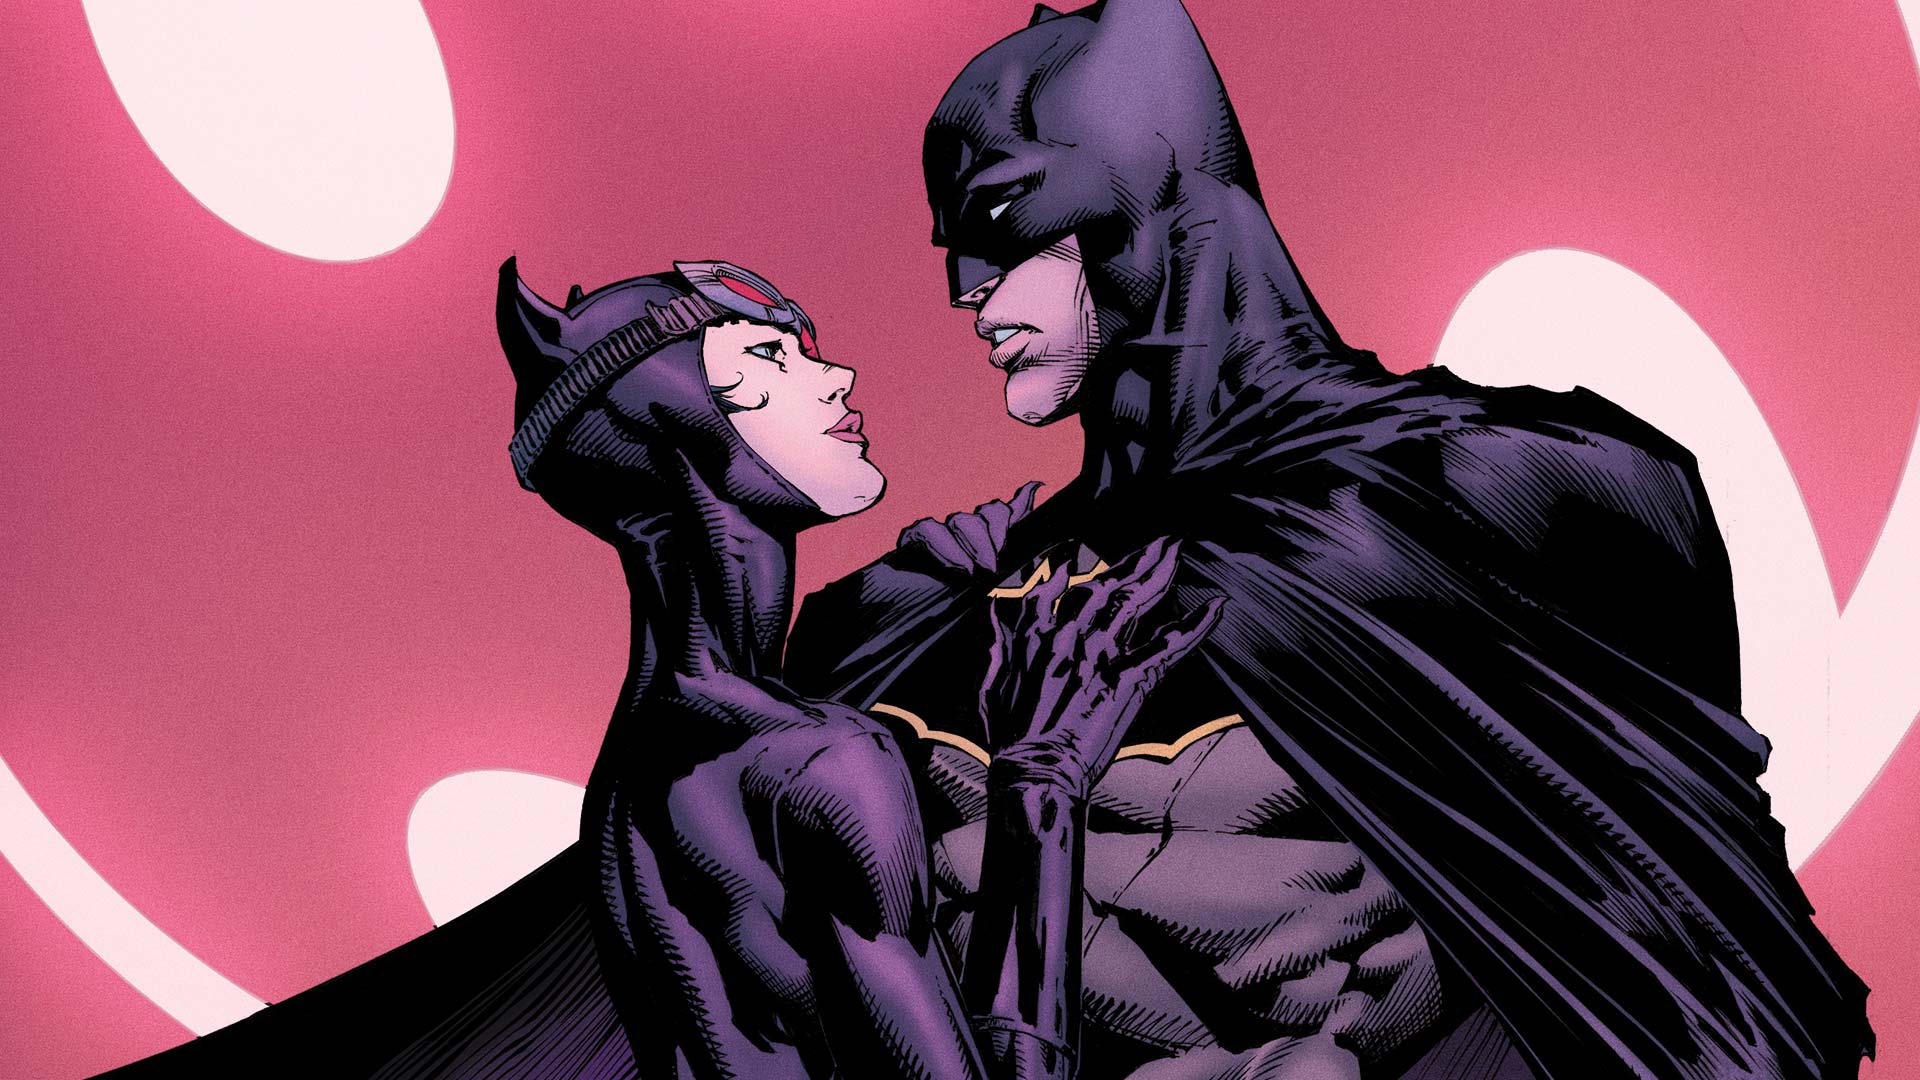 Wallpaper Batman And Catwoman, Dc Comics Heroes Batman And Catwoman